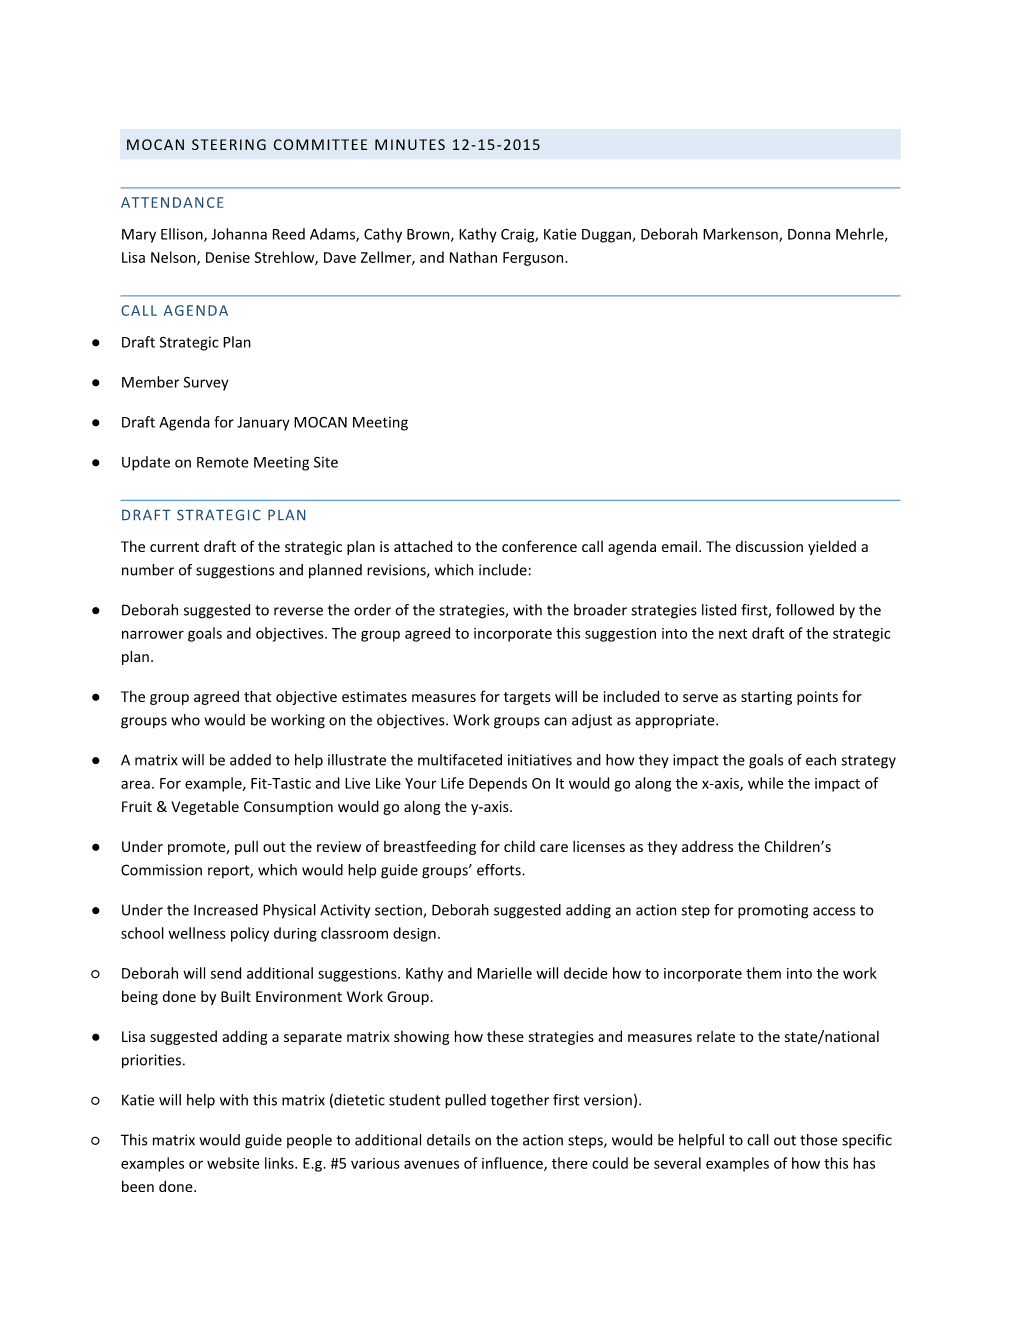 MOCAN Steering Committee Minutes 12-15-2015